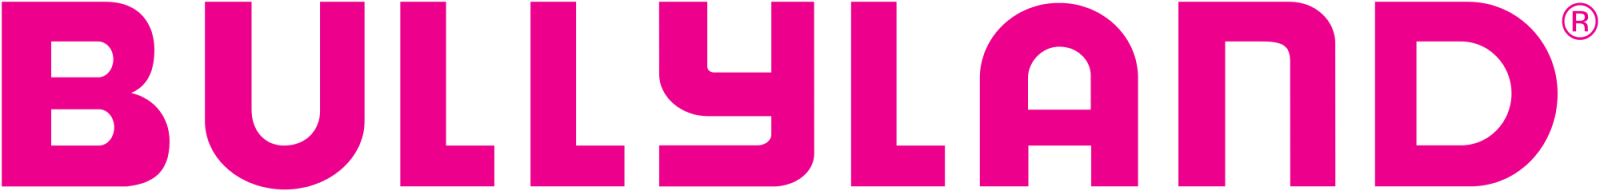 logo della bullyland azienda produce modellini, miniature e personaggi